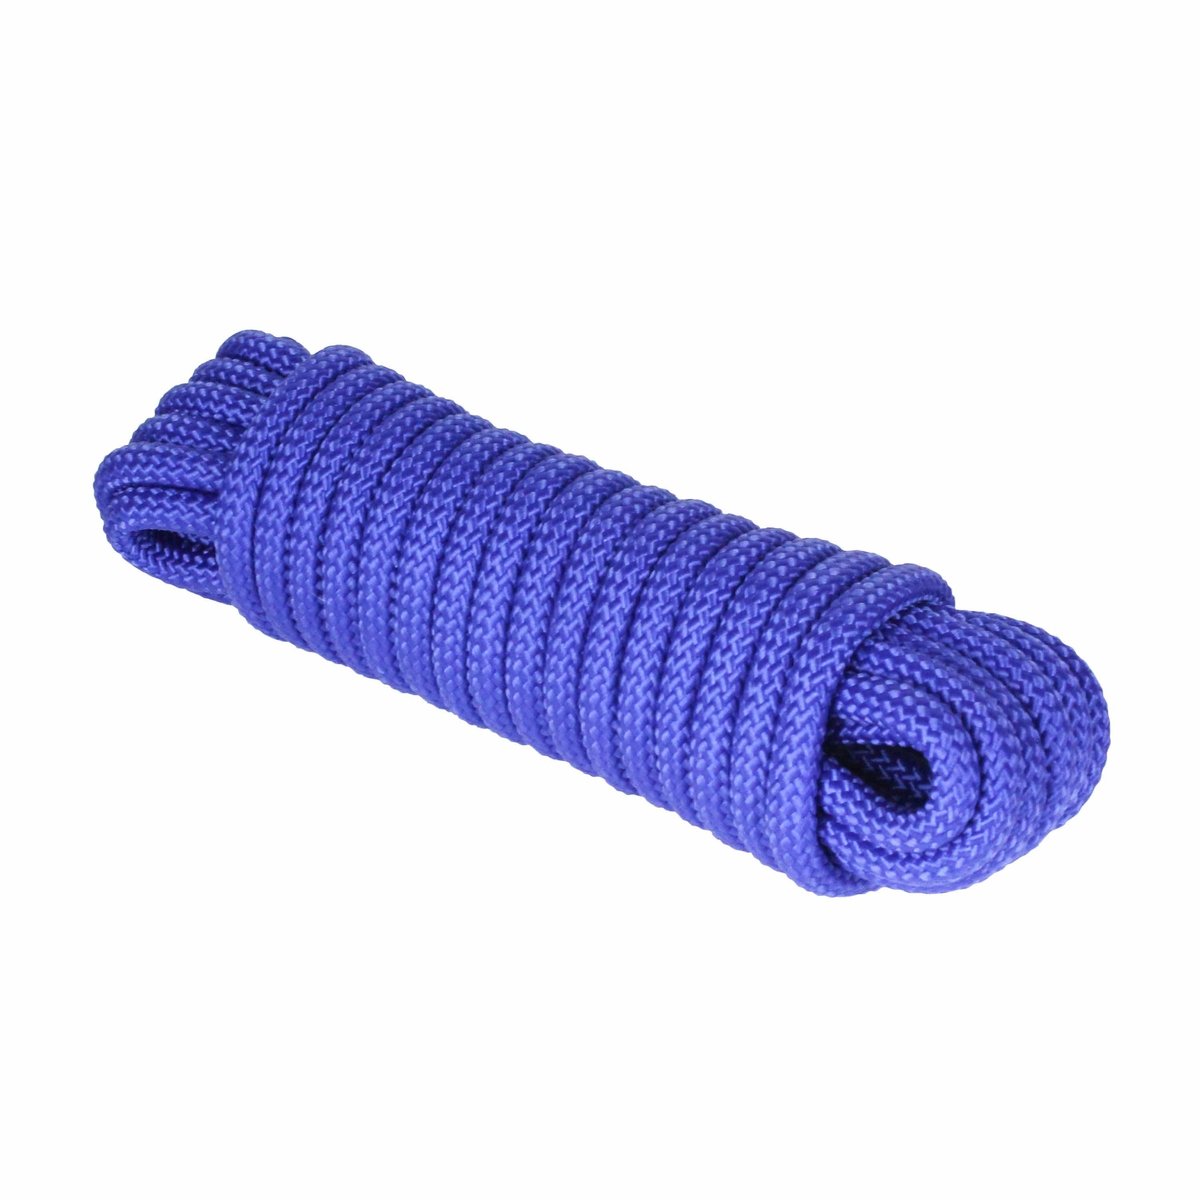 Extreme Max Diamond Braid Utility Rope 3/8" 50' Blue #3008.0277